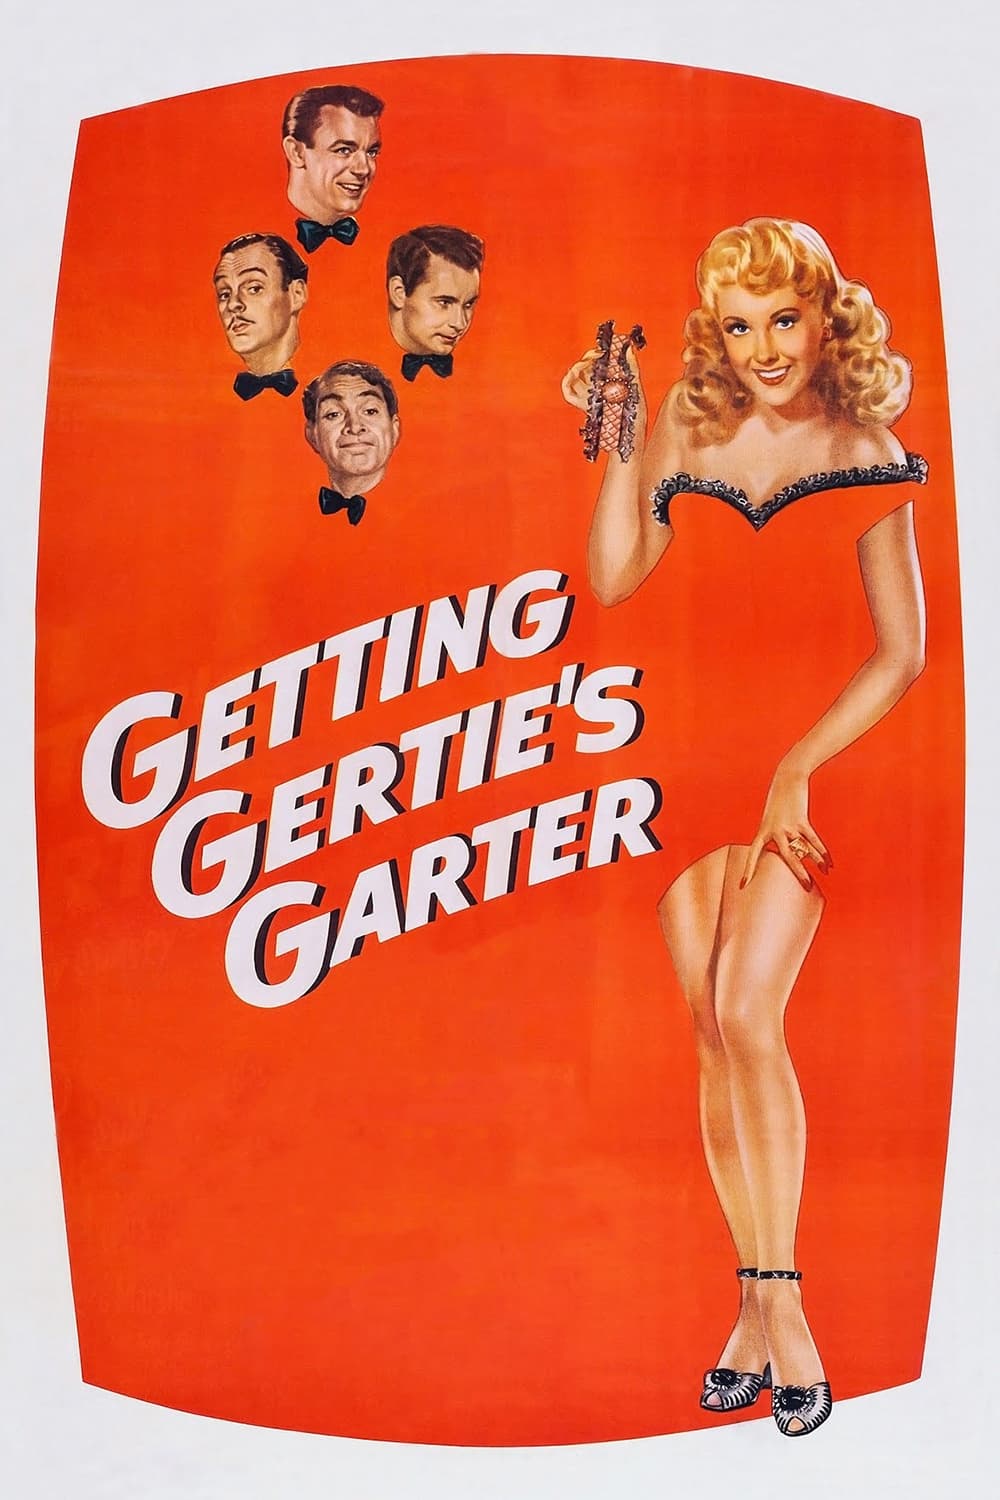 Getting Gertie's Garter (1945)